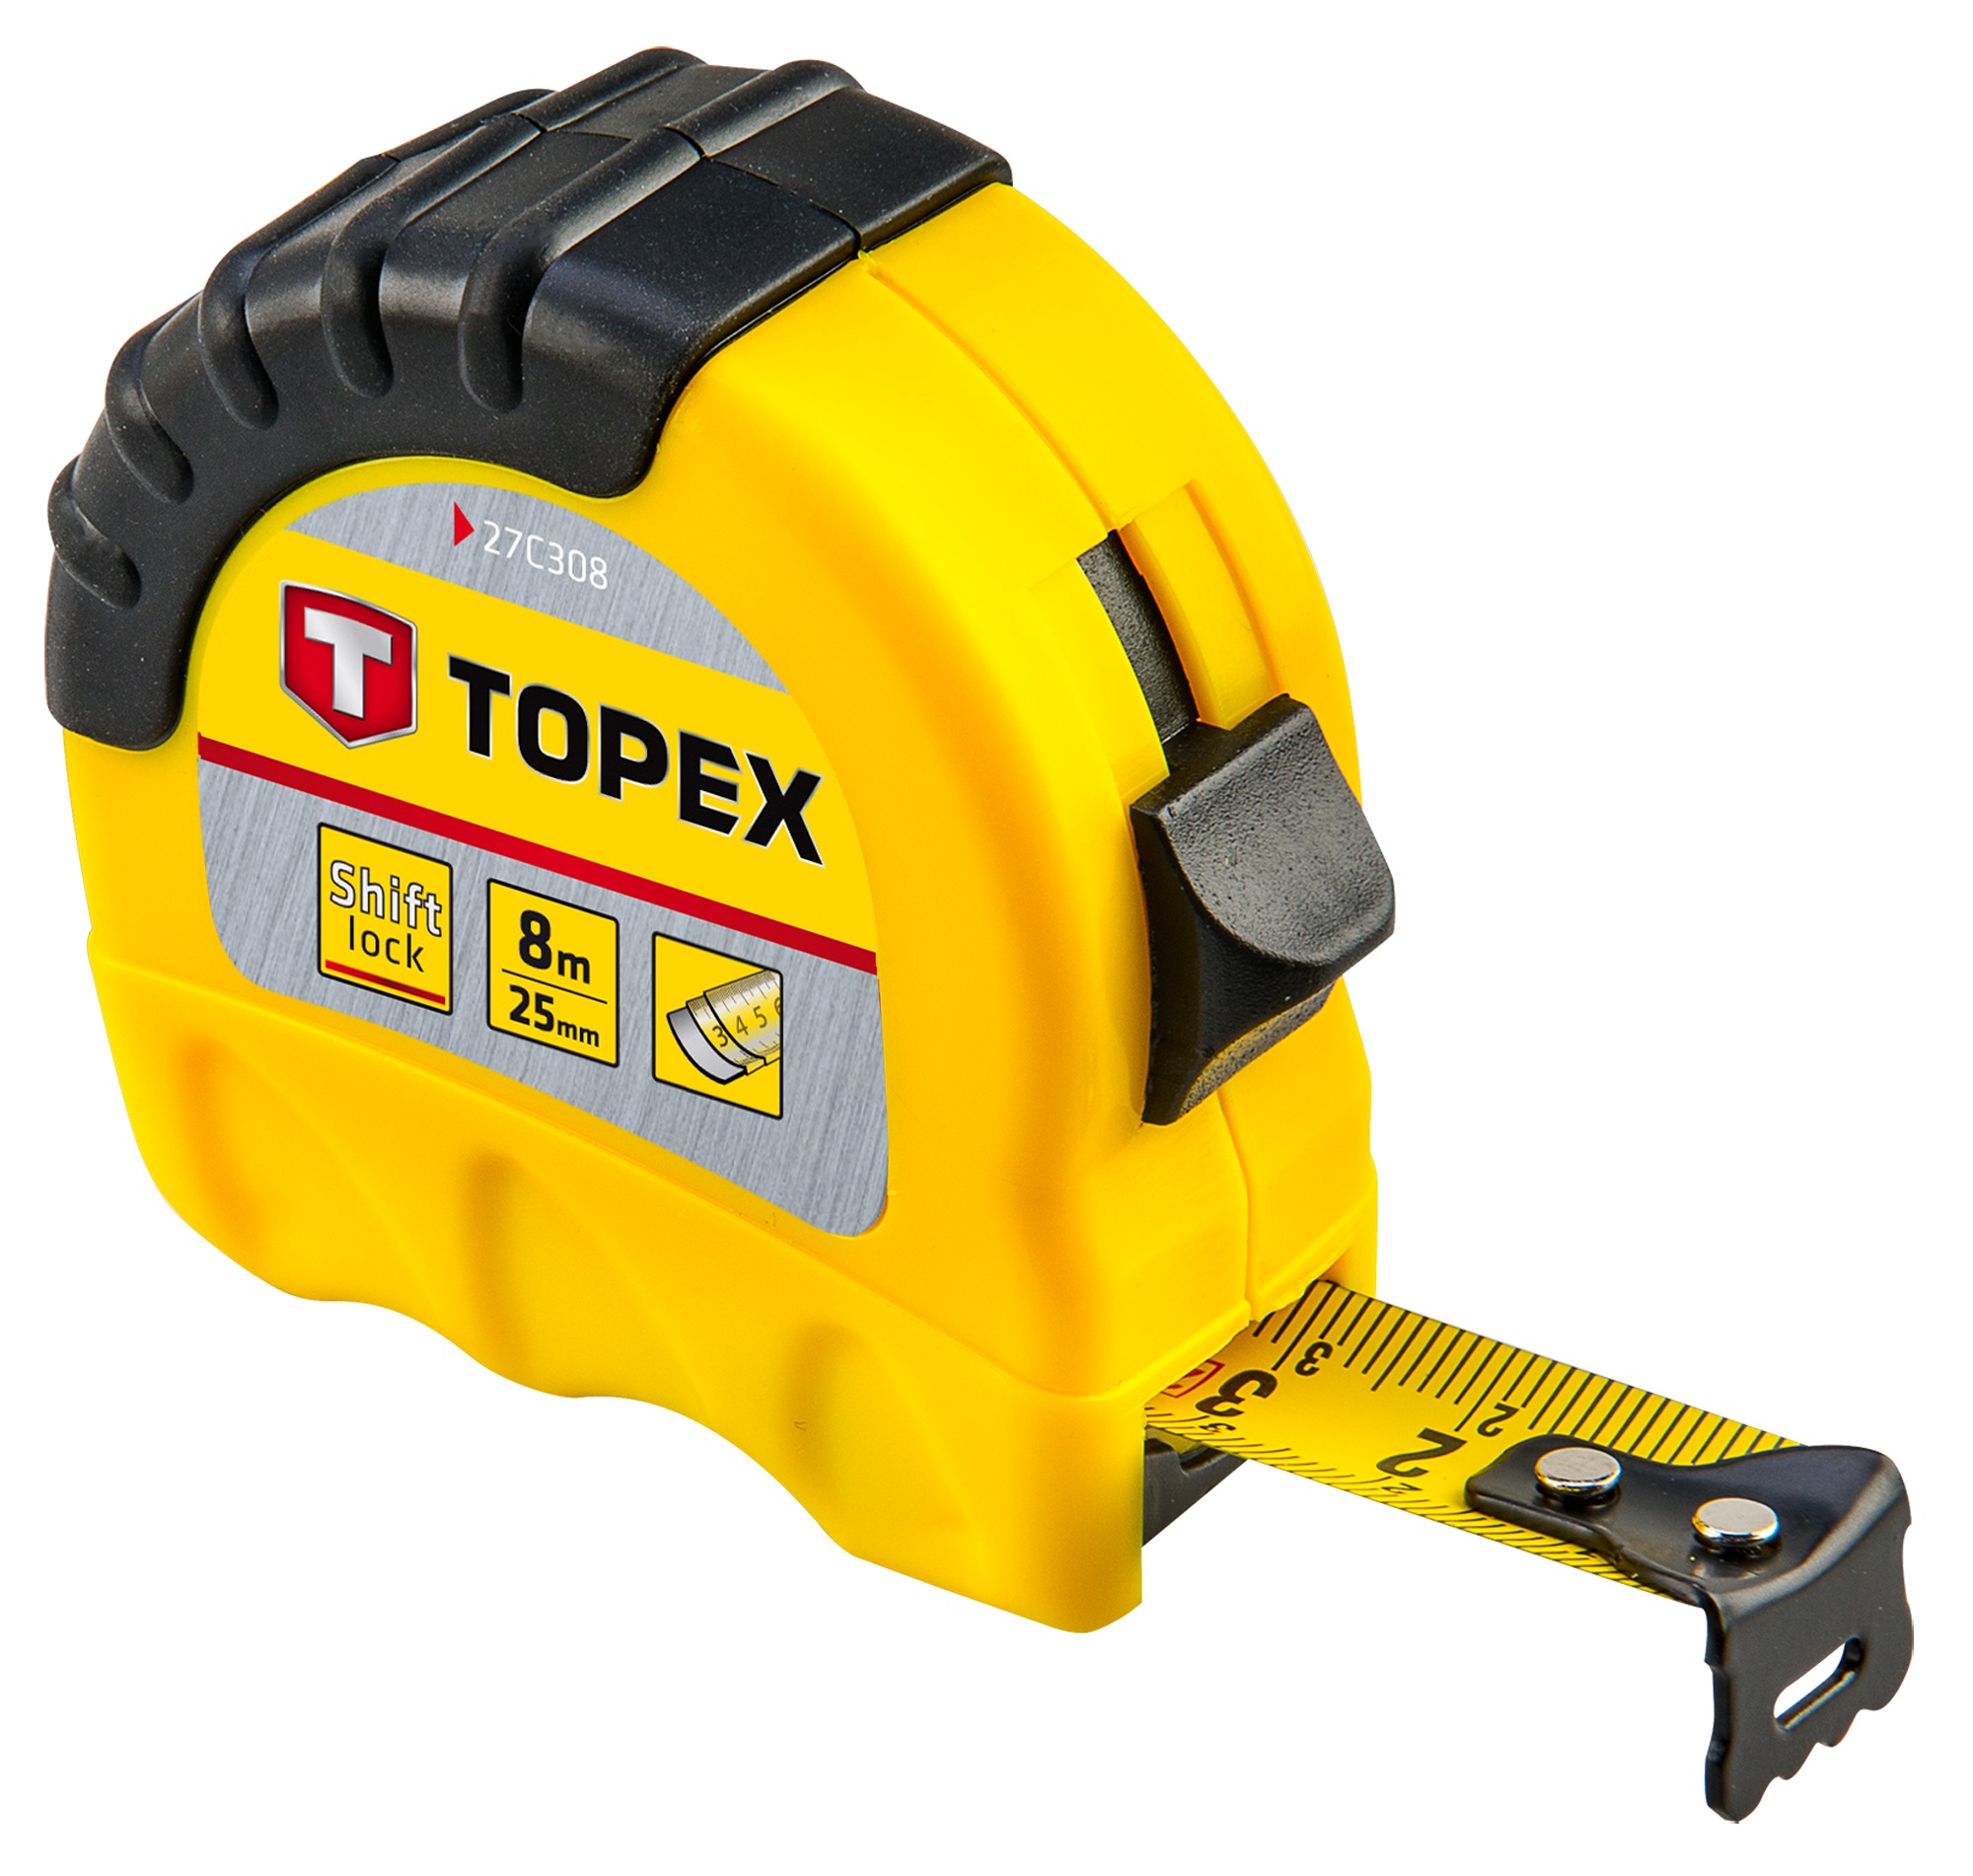 Рулетка Topex 27C308 в интернет-магазине, главное фото